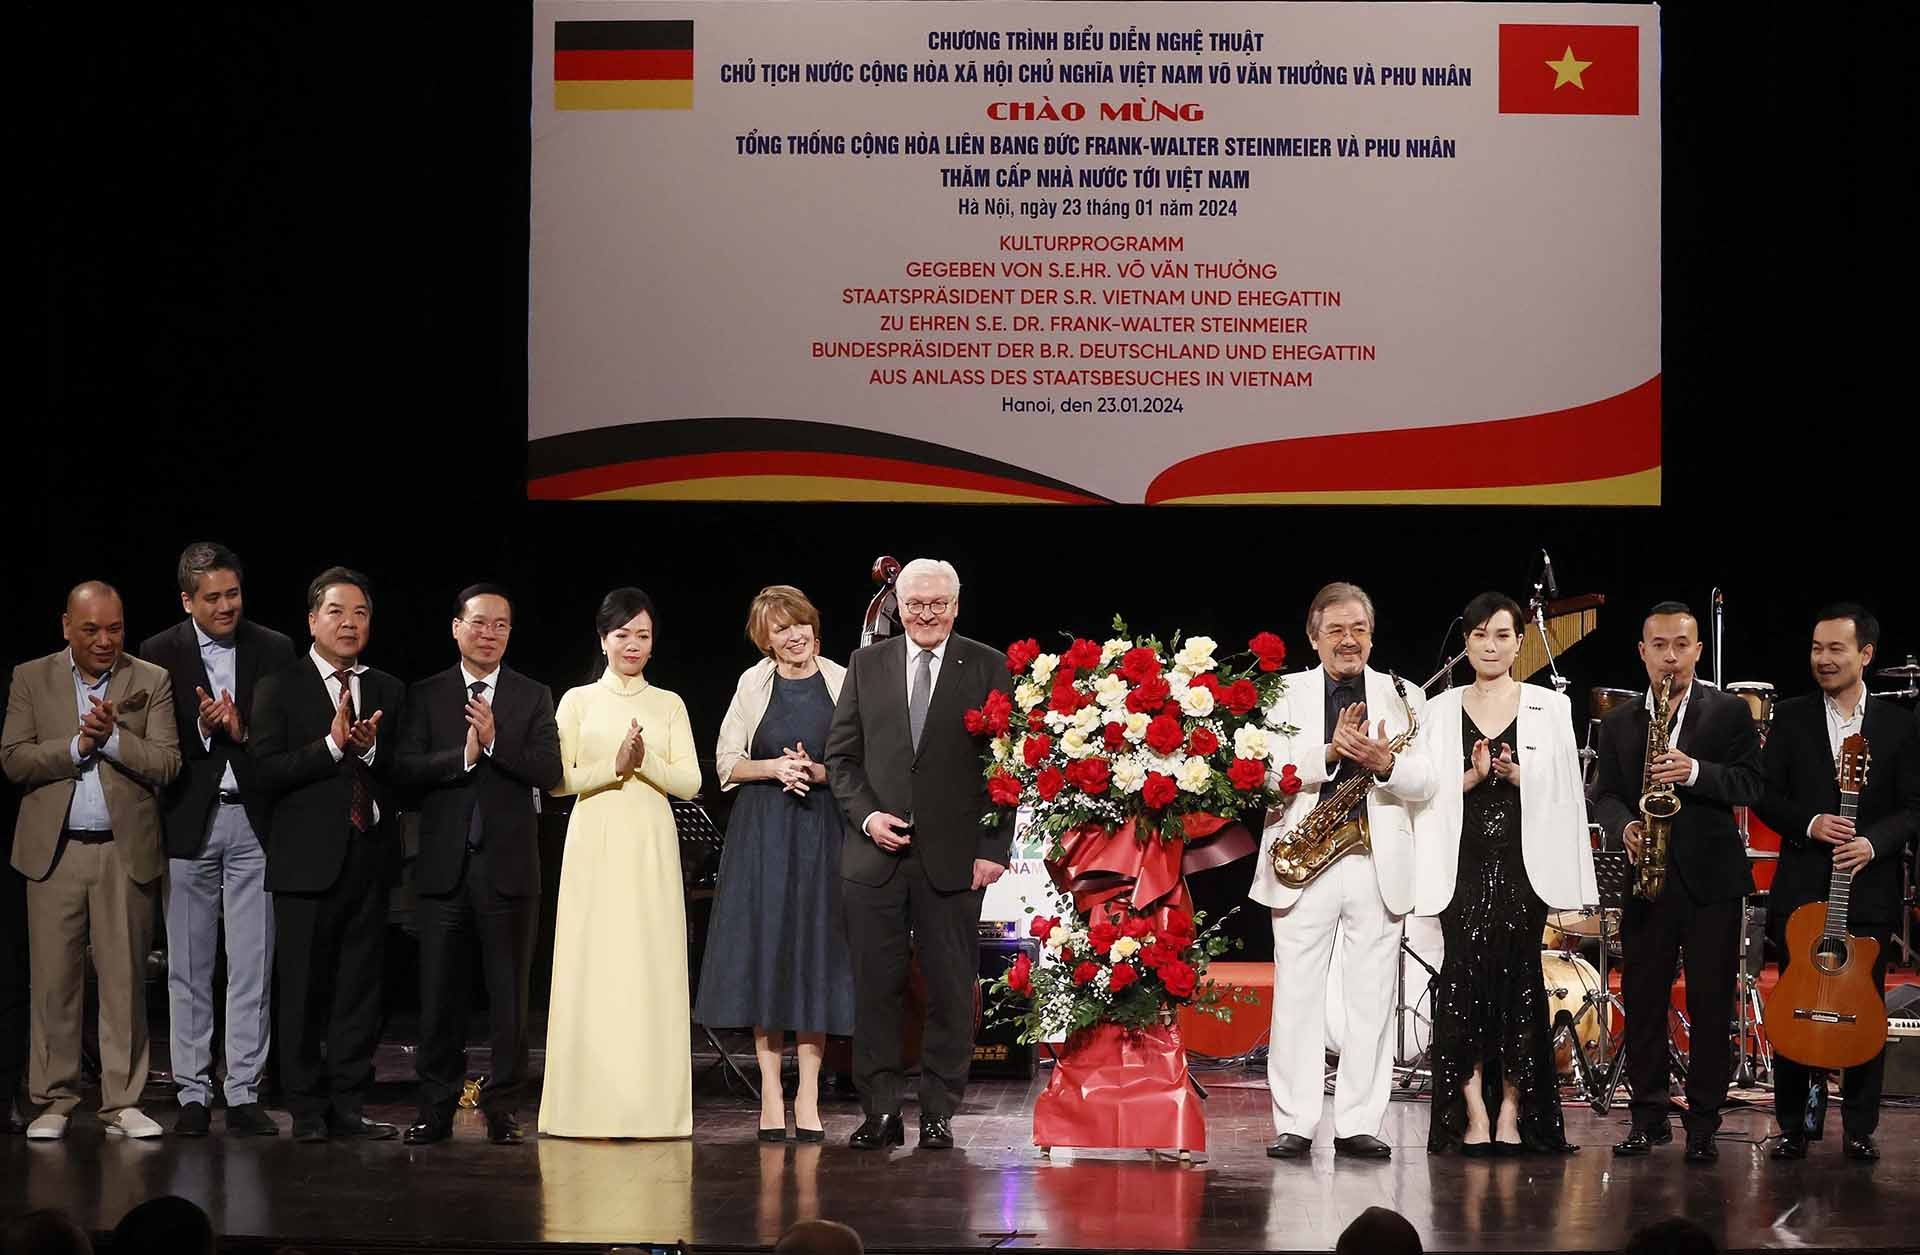 Chủ tịch nước Võ Văn Thưởng và Phu nhân cùng Tổng thống Đức Frank-Walter Steinmeier và Phu nhân tặng hoa cho các nghệ sỹ. (Nguồn: TTXVN)